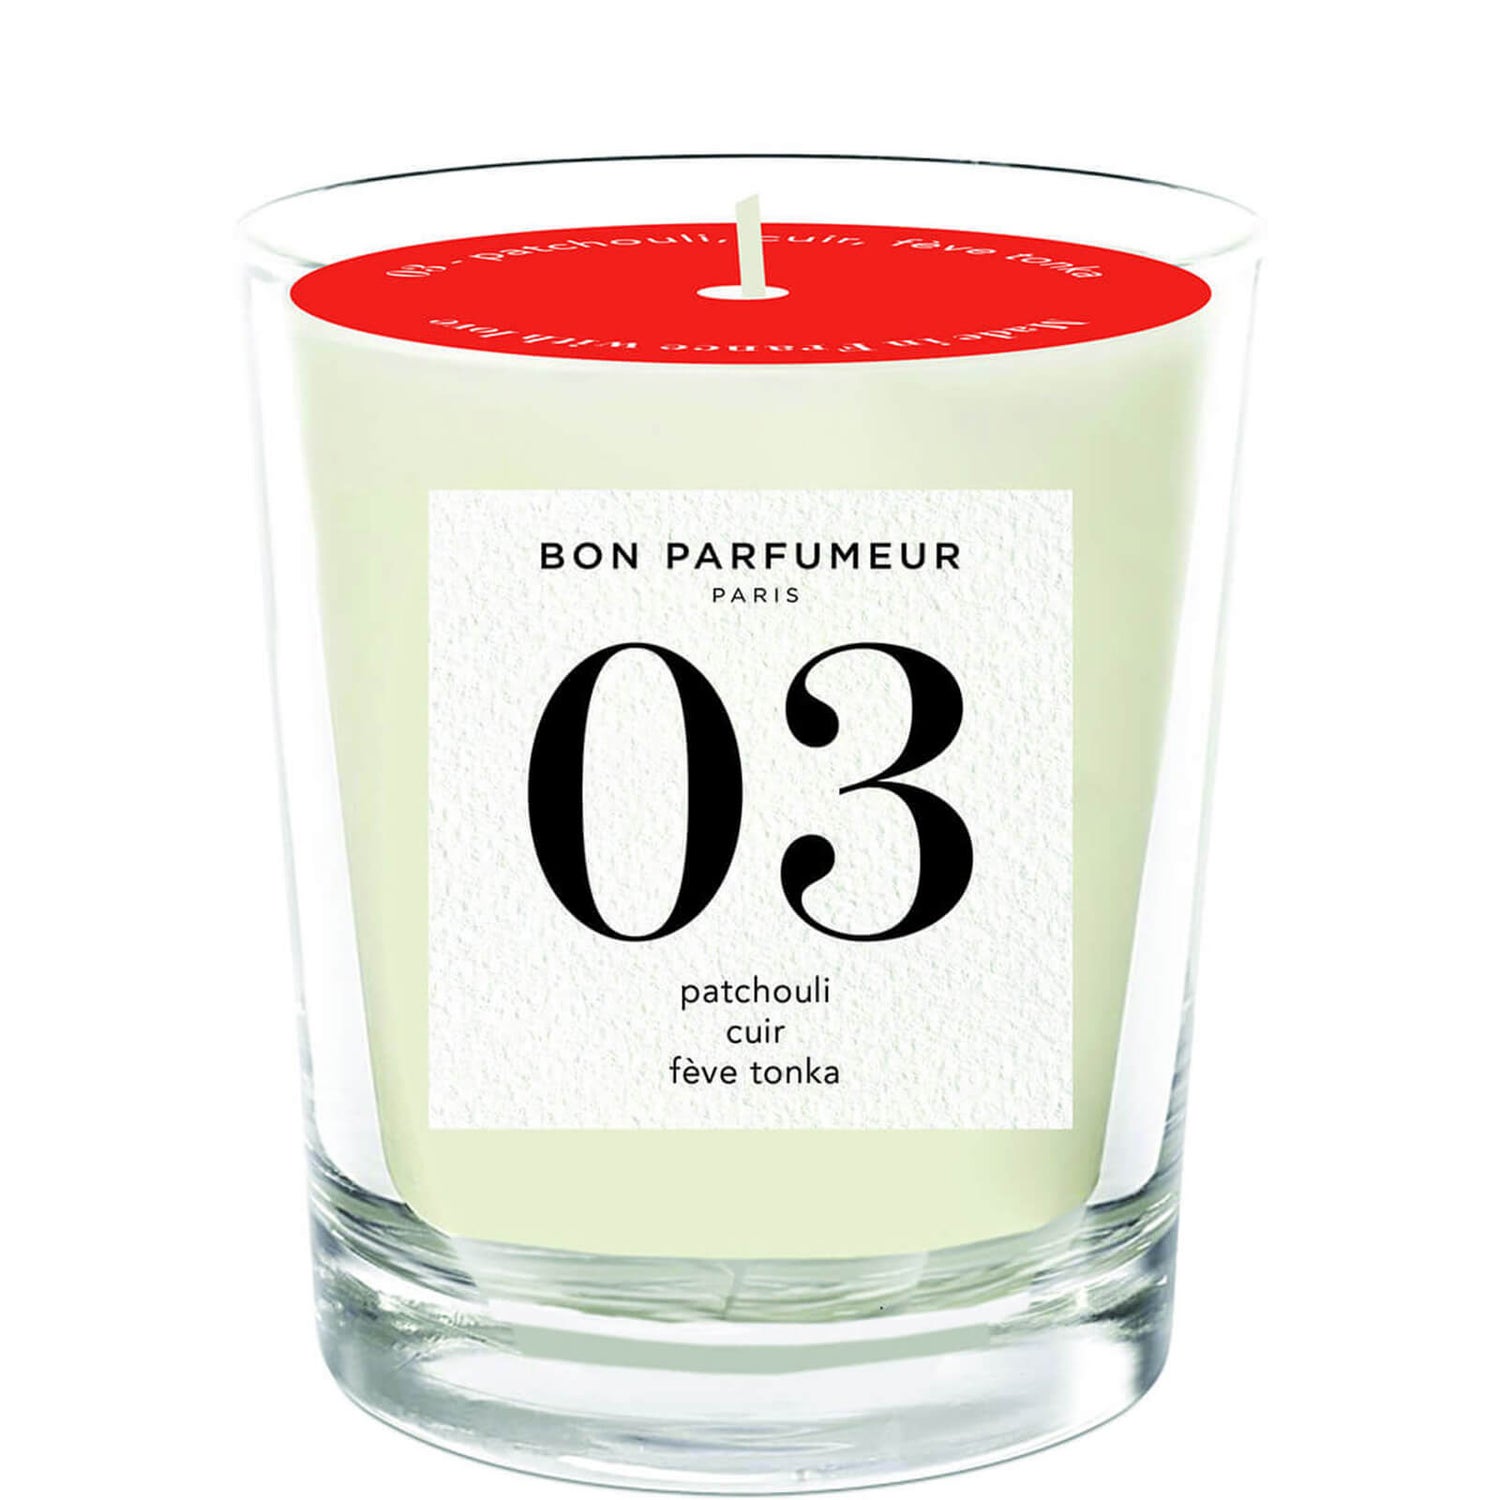 Bon Parfumeur 03 Patchouli Leather Tonka Bean Candle 180g